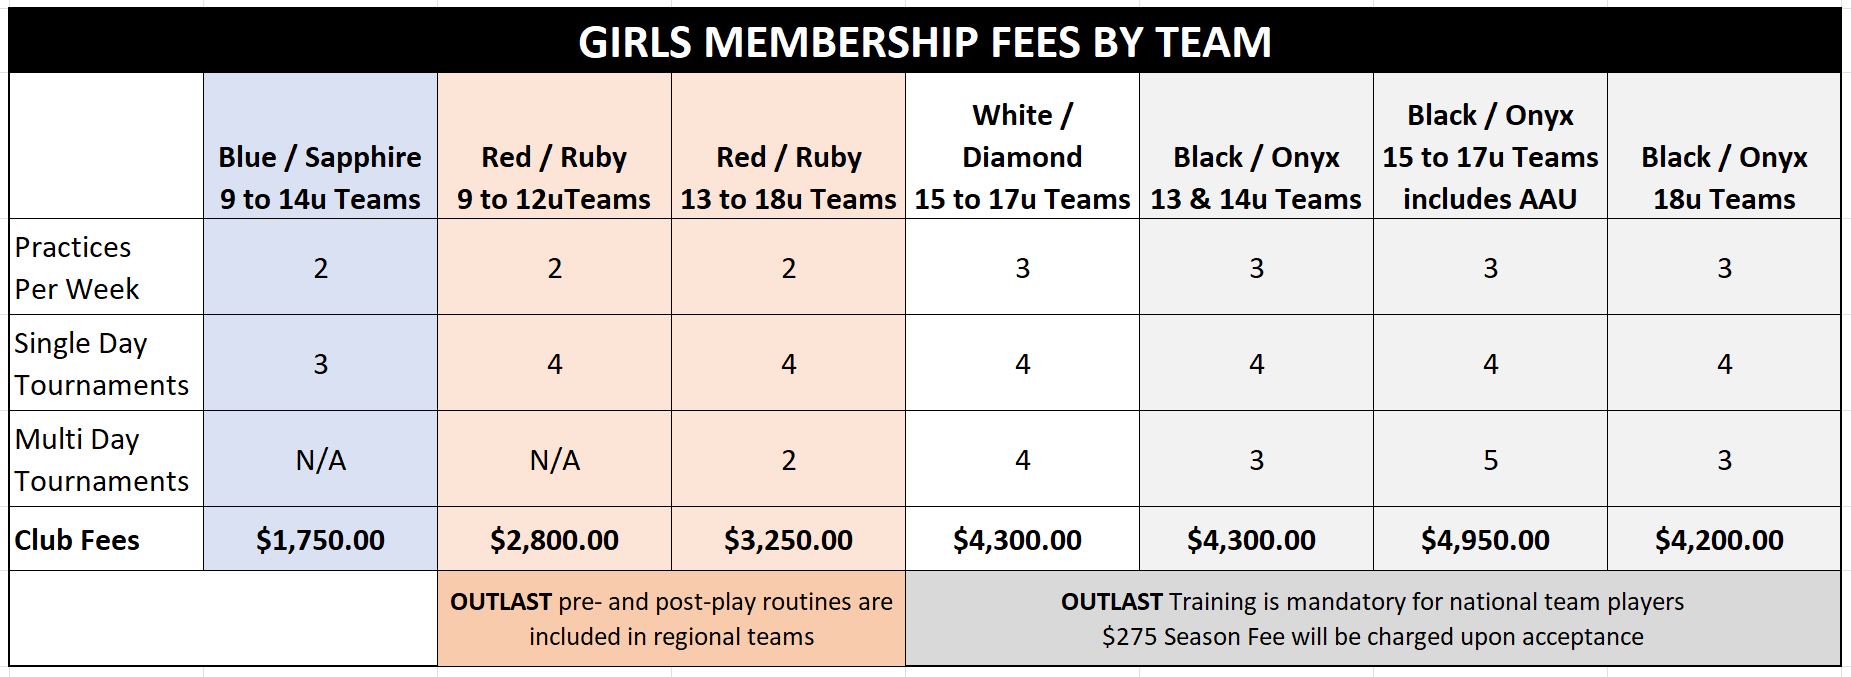 Girls Club Fees